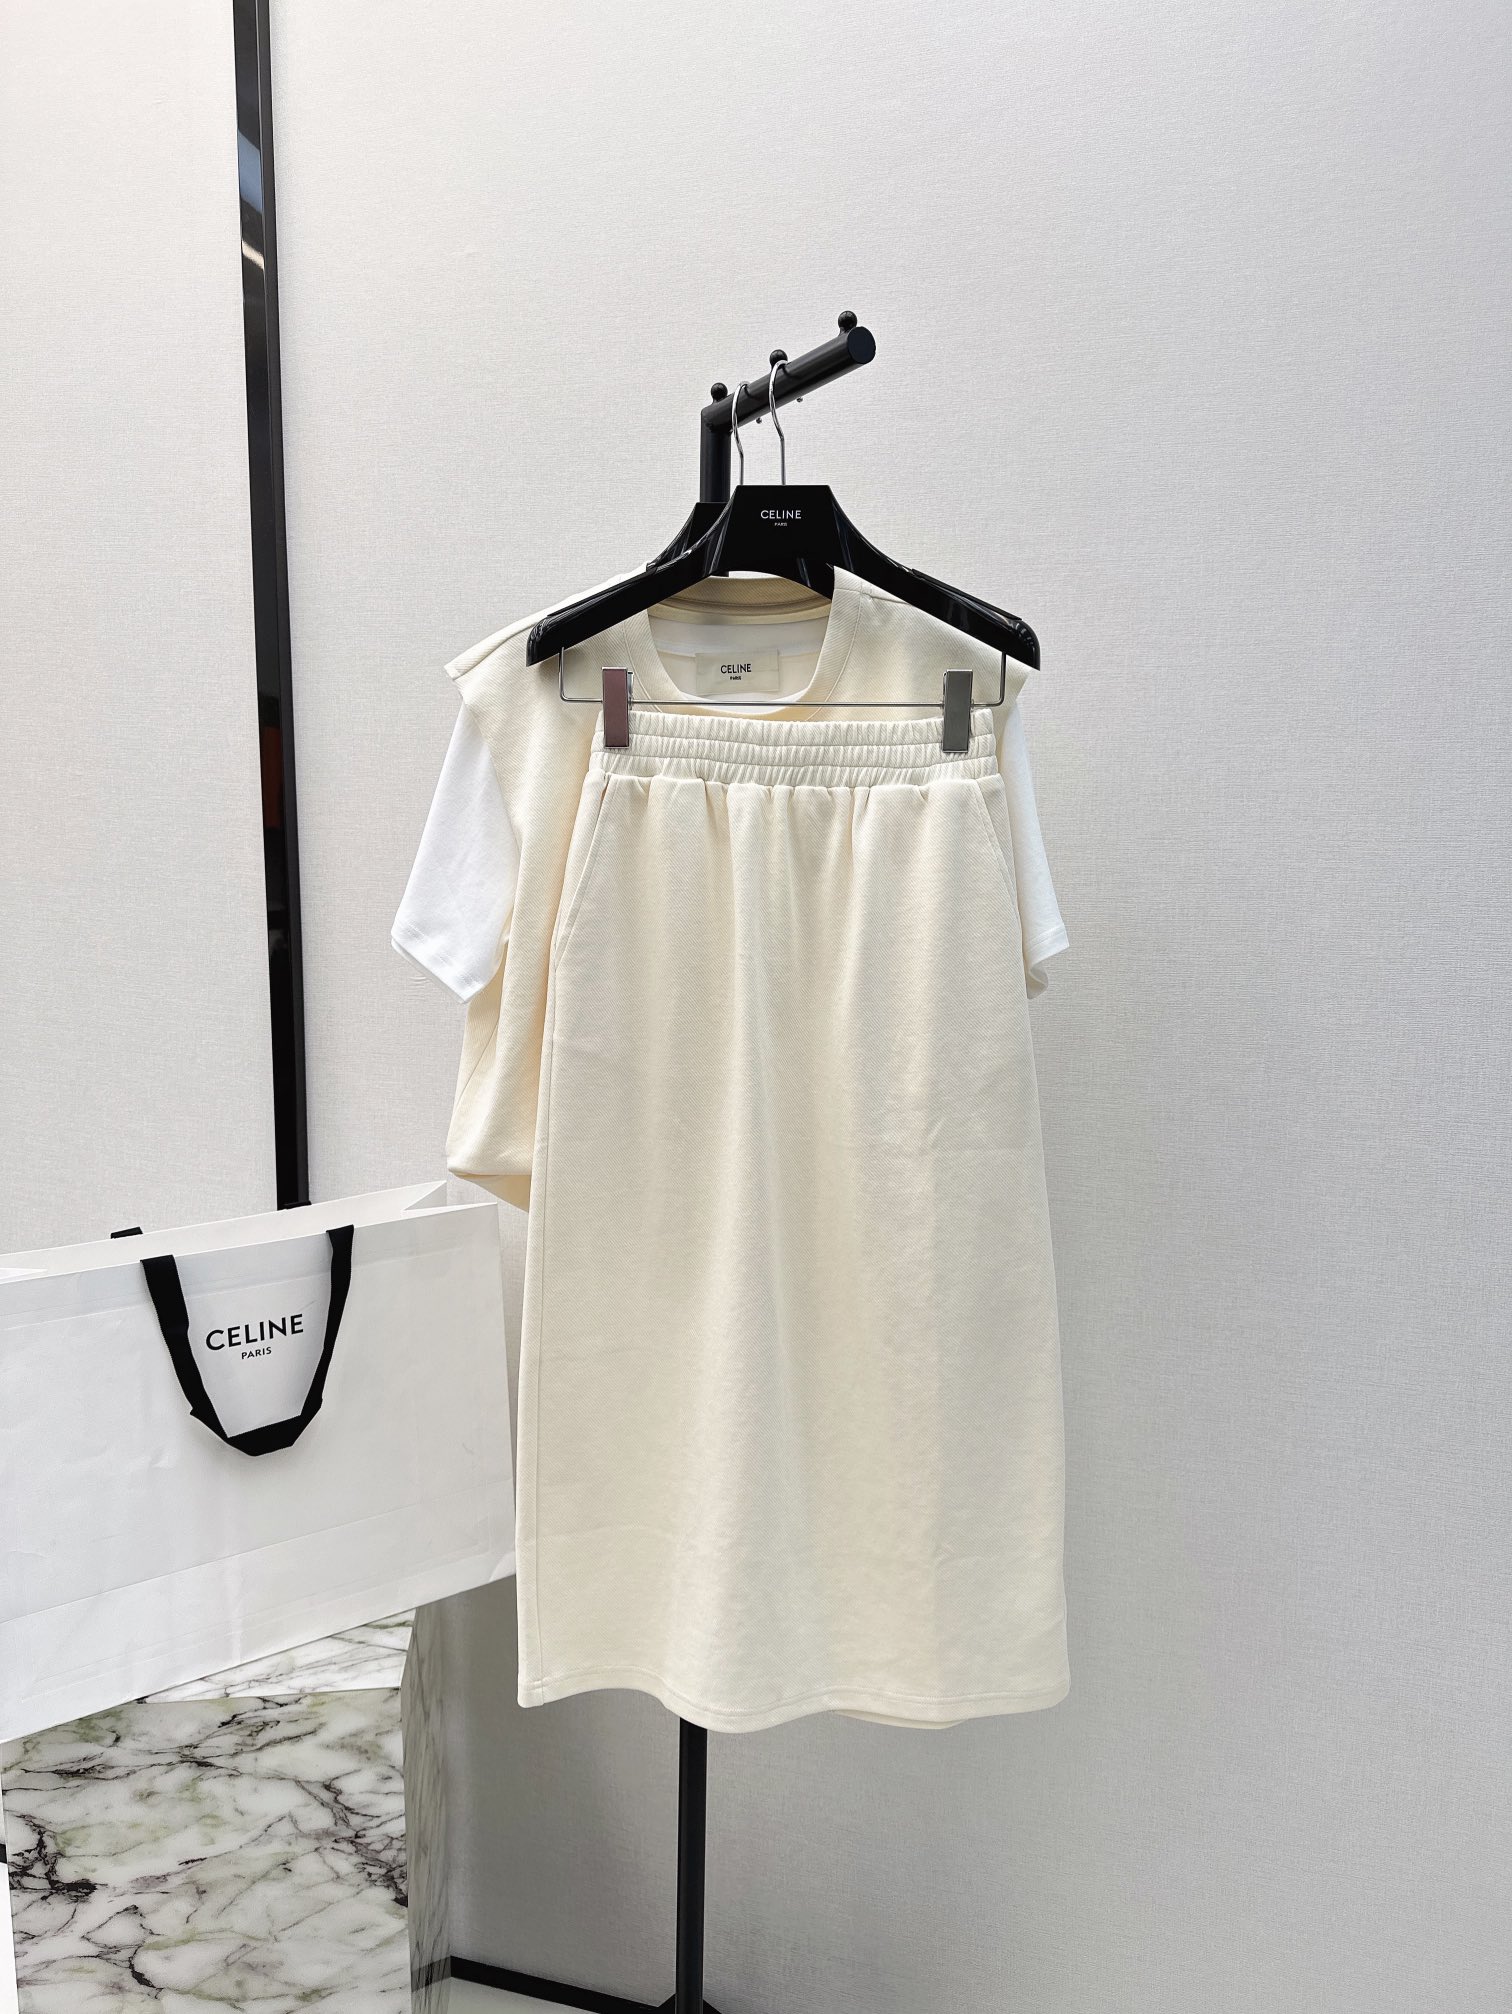 独家首发CE24Ss春夏最新款精致休闲套装基础白T+无袖马甲+包臀半裙经典休闲三件套版型超洋气上身就一整